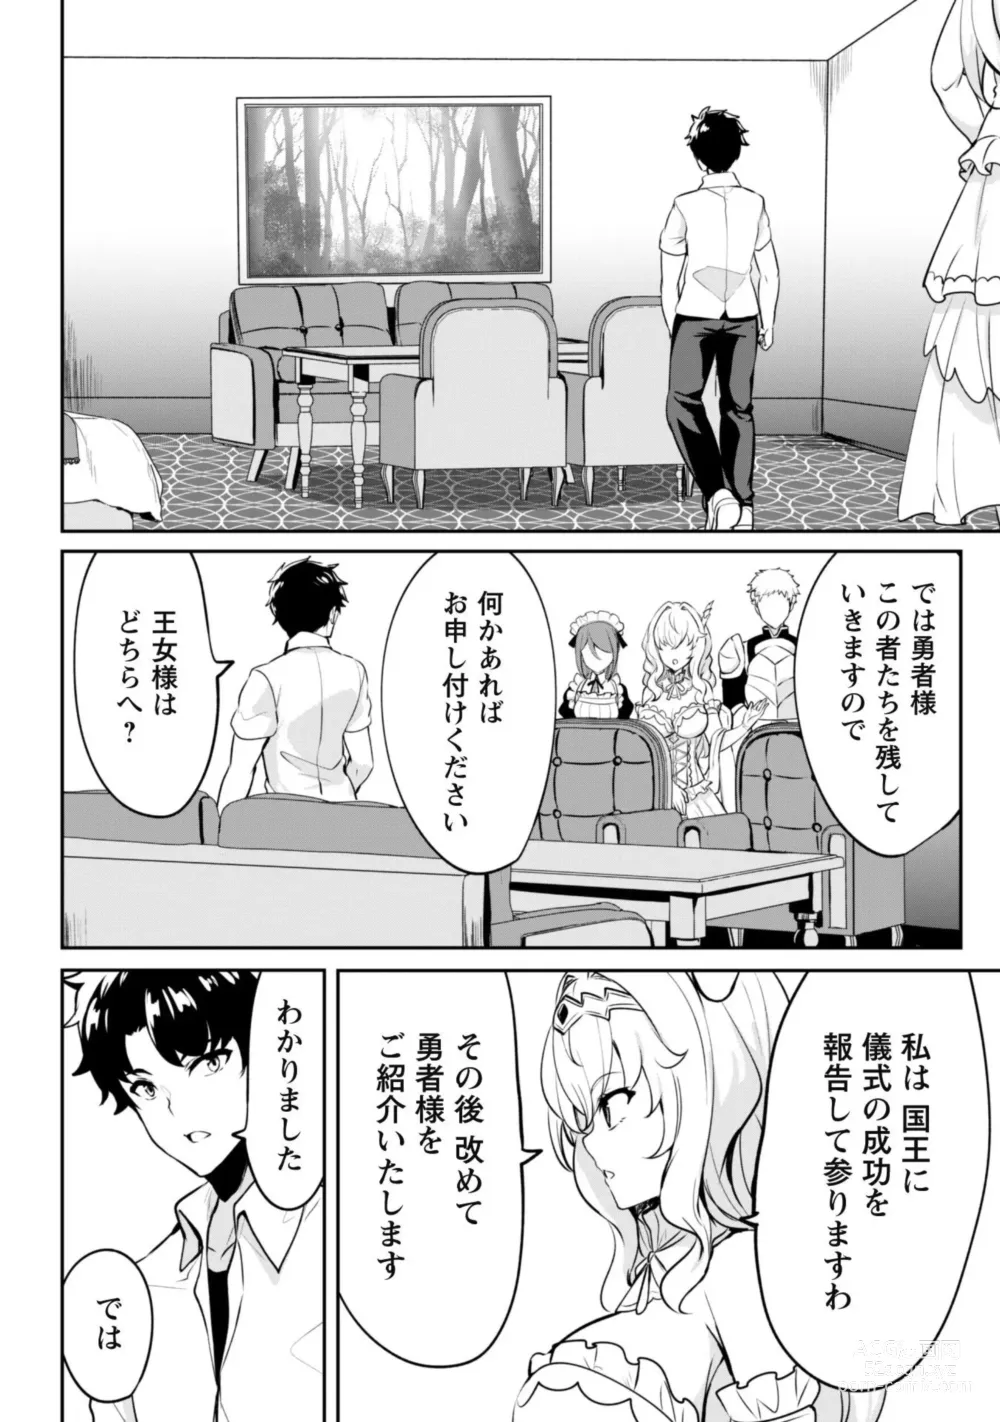 Page 13 of manga Hangyaku no Yūsha 〜 Sukiru o Tsukatte Haraguro ōjo no Kokoro to Karada o Shōaku seyo 〜 1-2